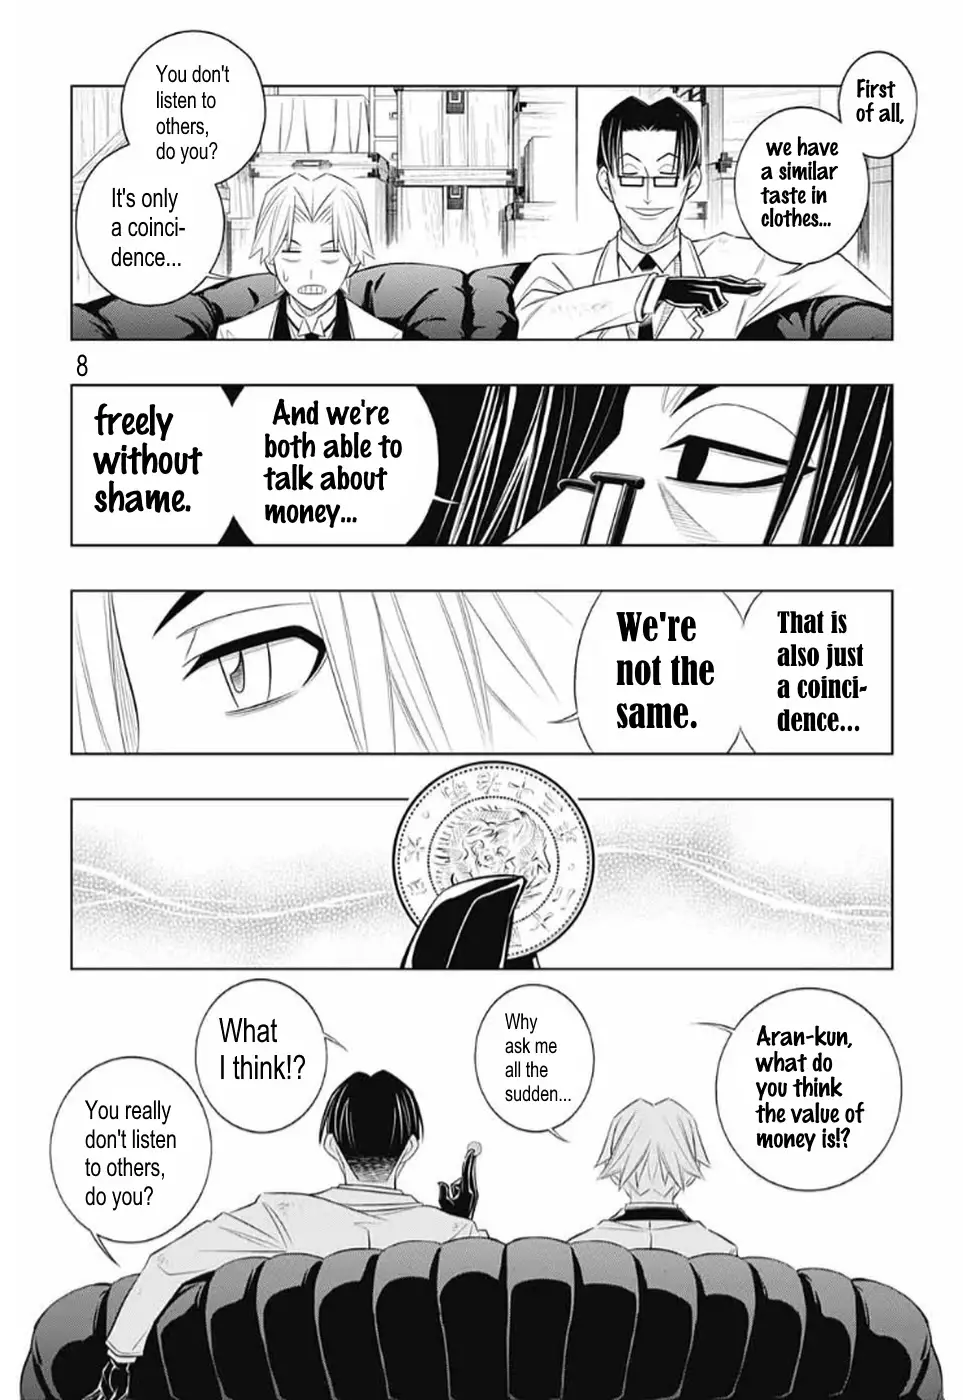 Rurouni Kenshin: Hokkaido Arc - 26 page 8